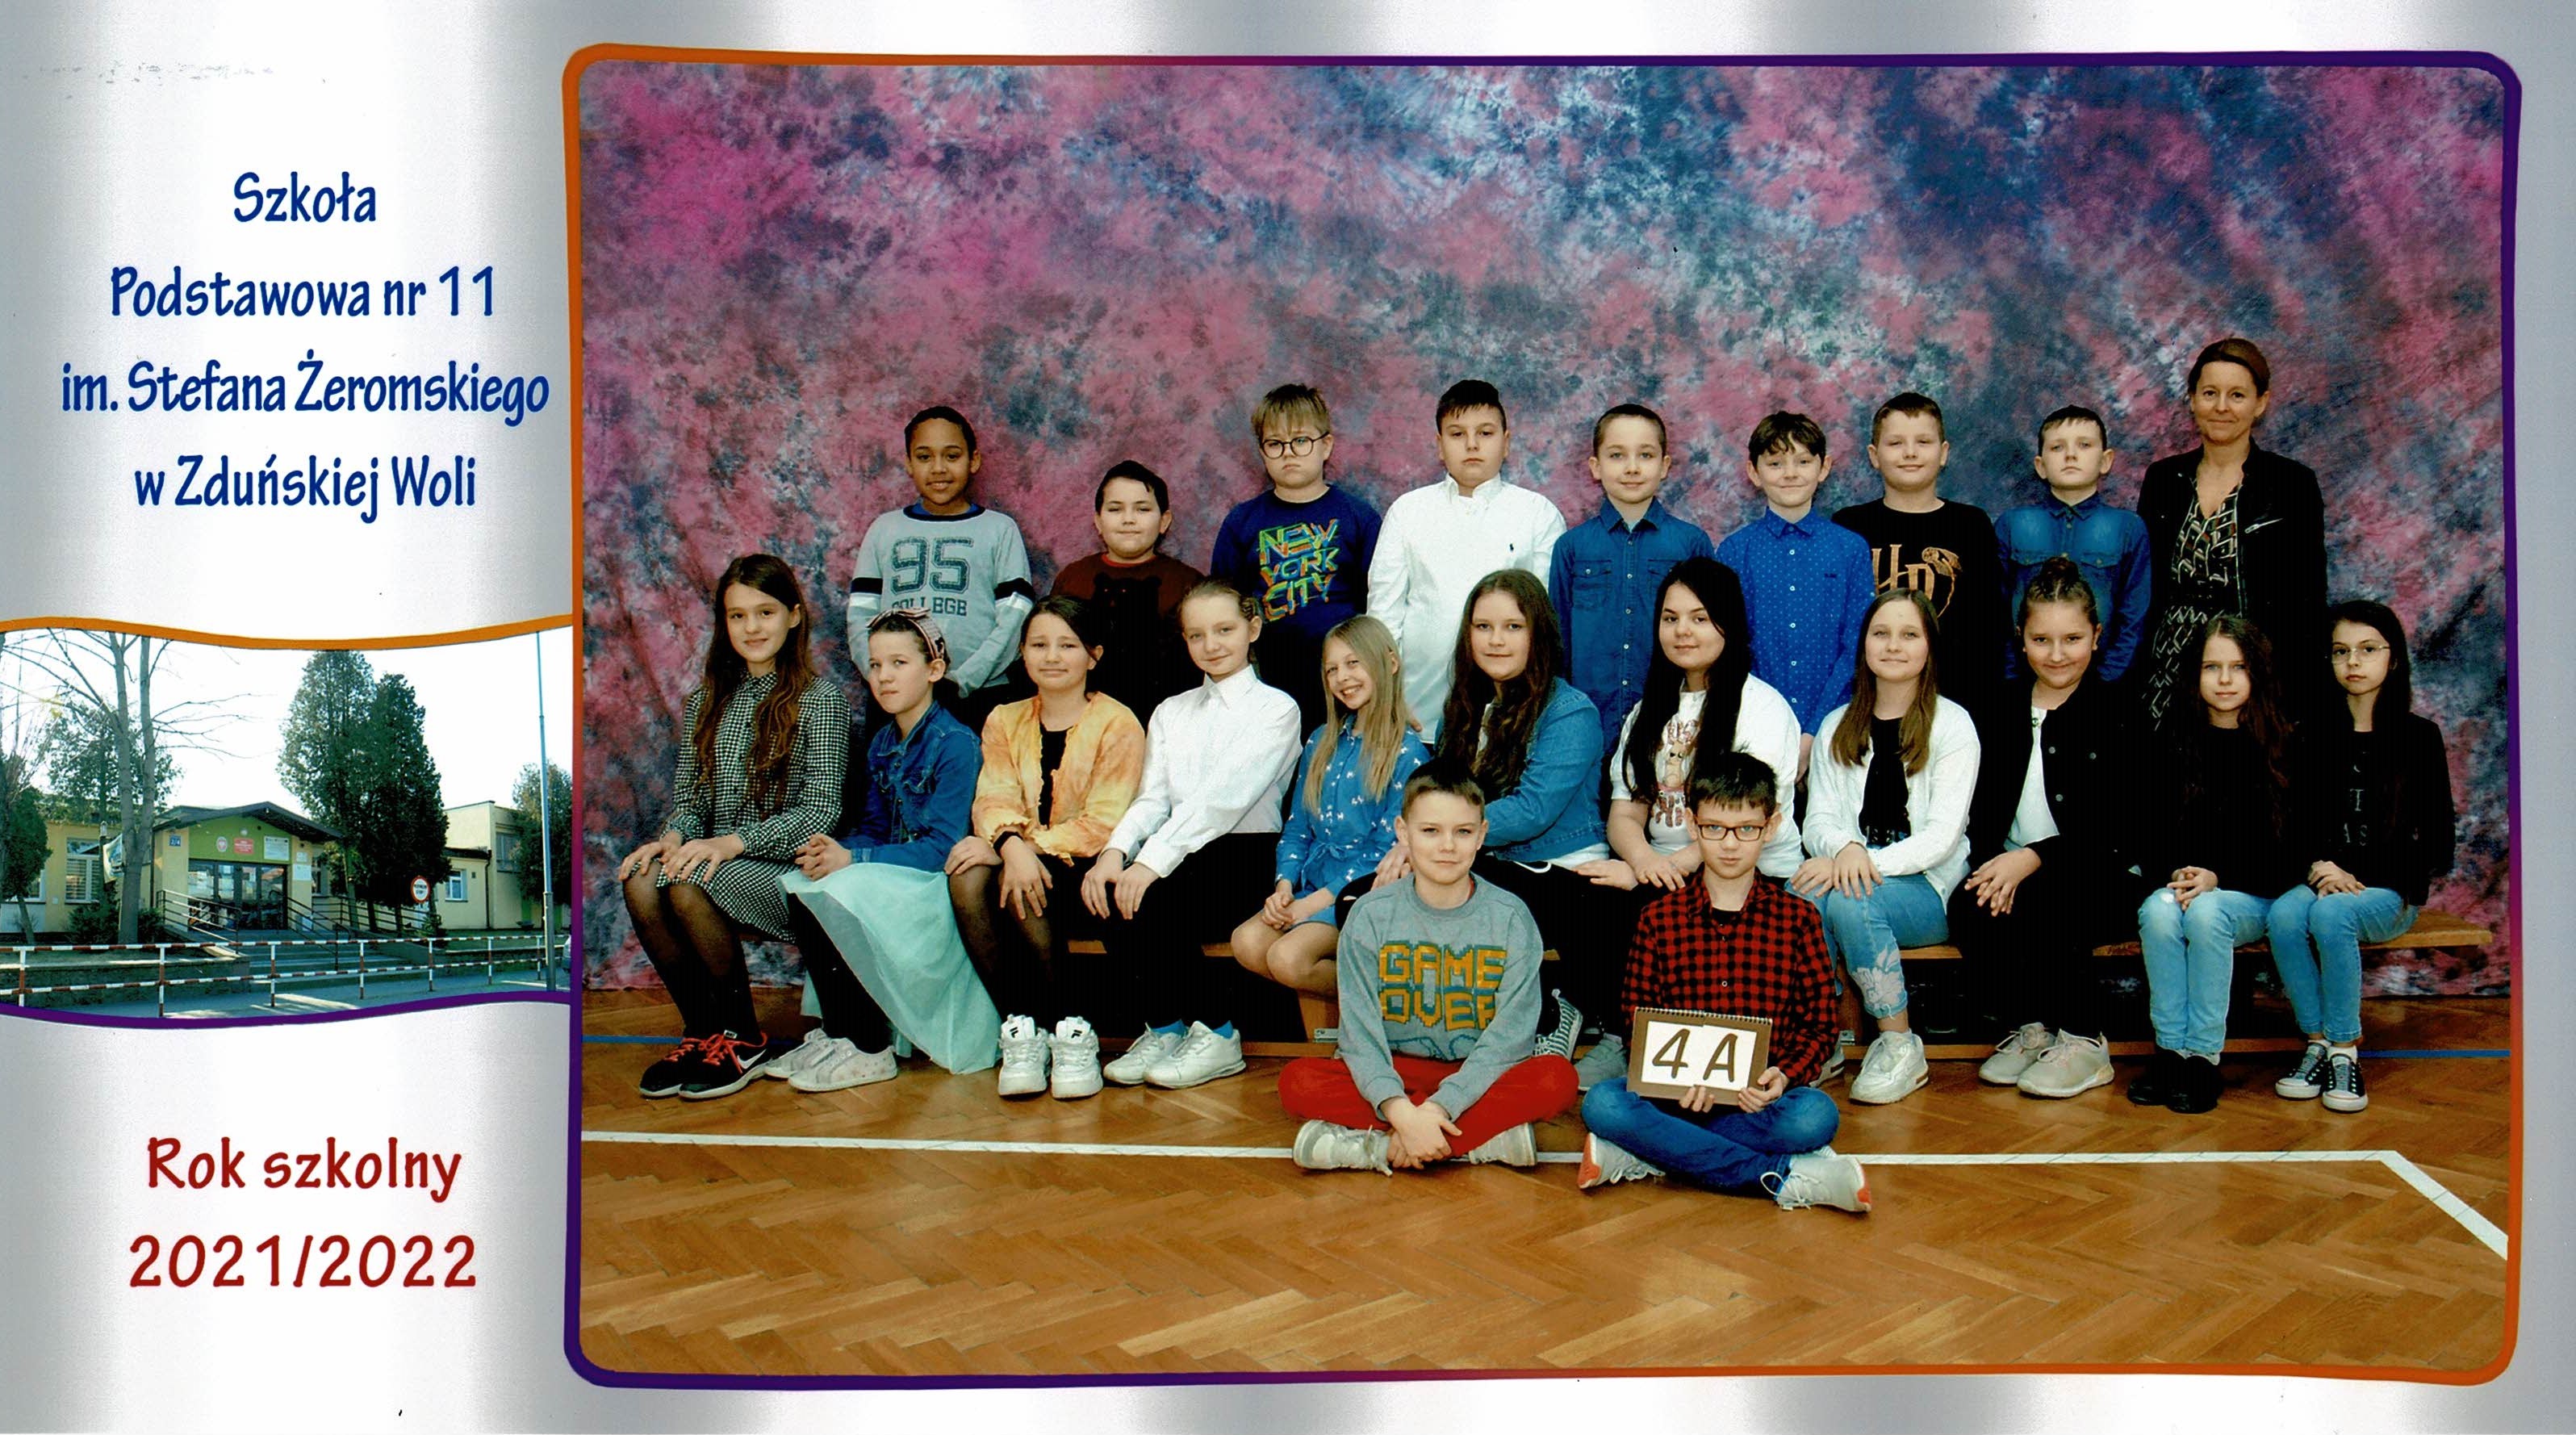 Uczniowie klasy 4A, dziewczynki i chłopcy siedzący na ławce z tabliczką "klasa 4a"